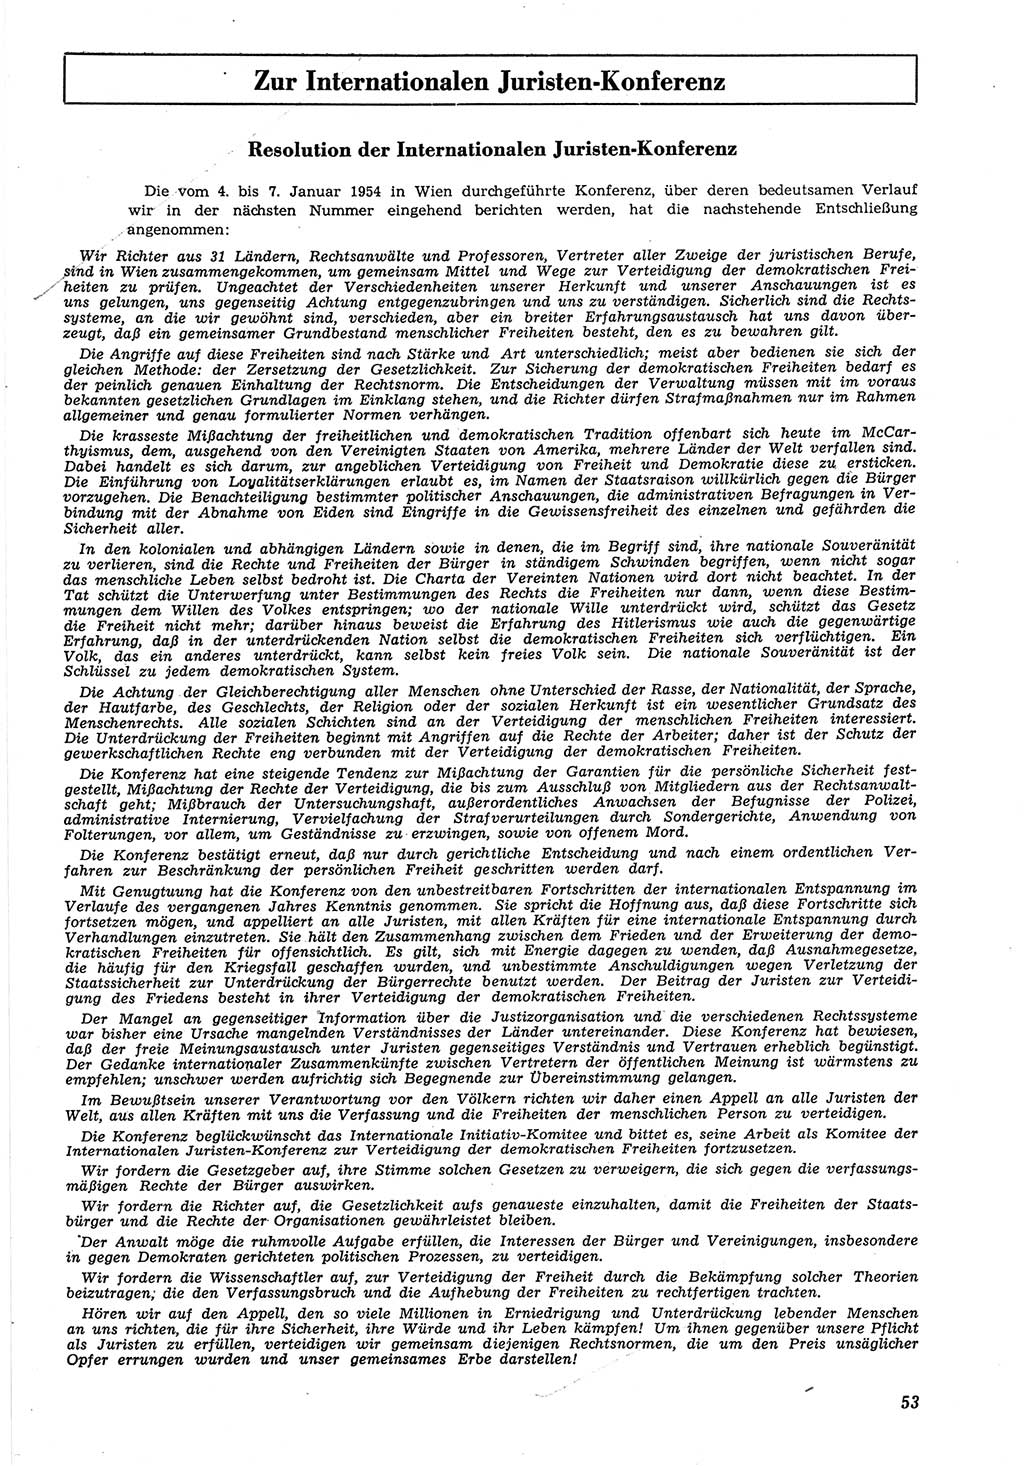 Neue Justiz (NJ), Zeitschrift für Recht und Rechtswissenschaft [Deutsche Demokratische Republik (DDR)], 8. Jahrgang 1954, Seite 53 (NJ DDR 1954, S. 53)